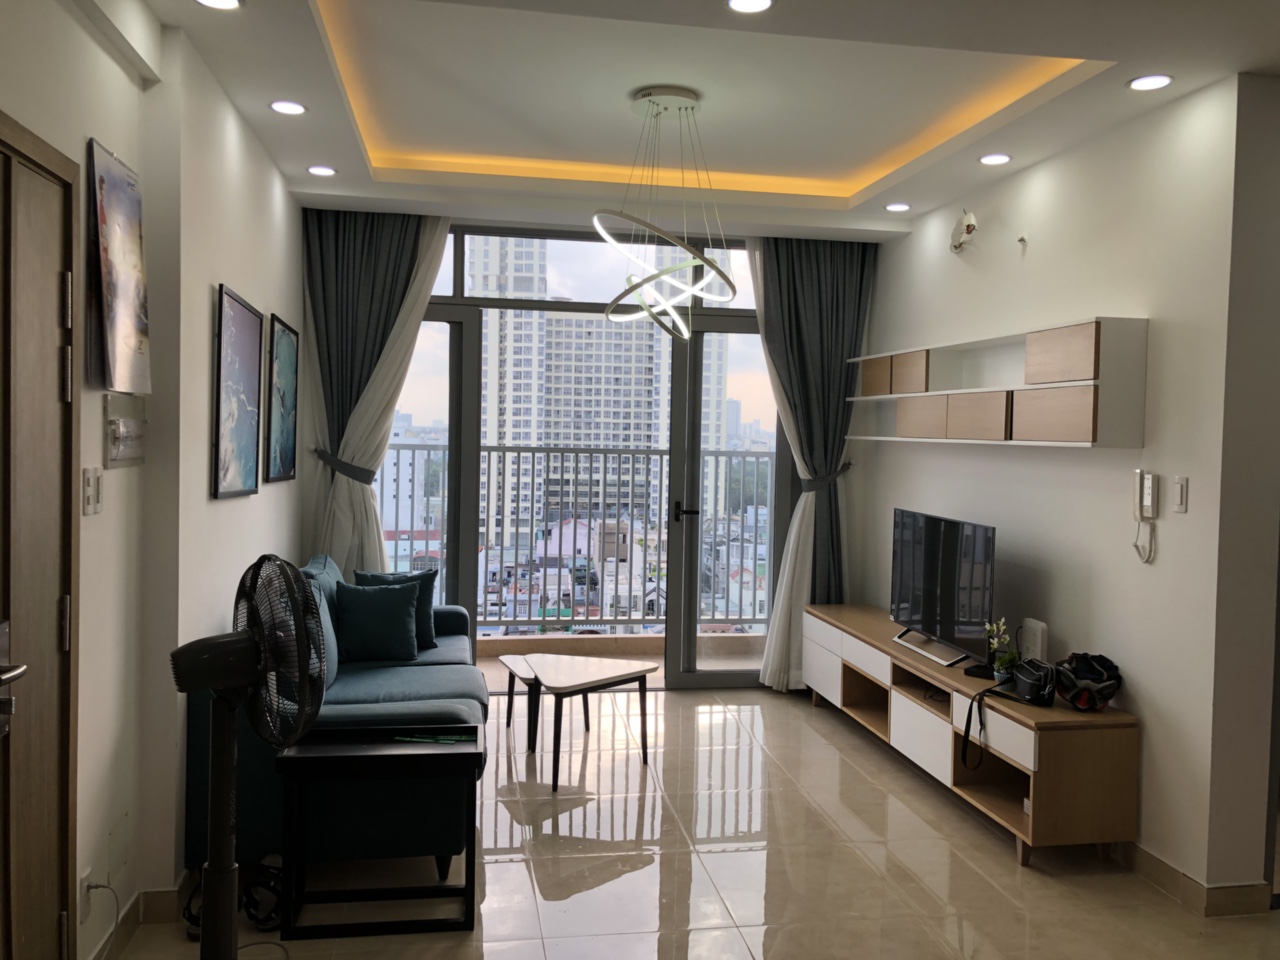  Cần cho thuê hoặc bán  căn hộ chung cư cao tầng Luxcity số 528, Phường Bình Thuận, Quận 7